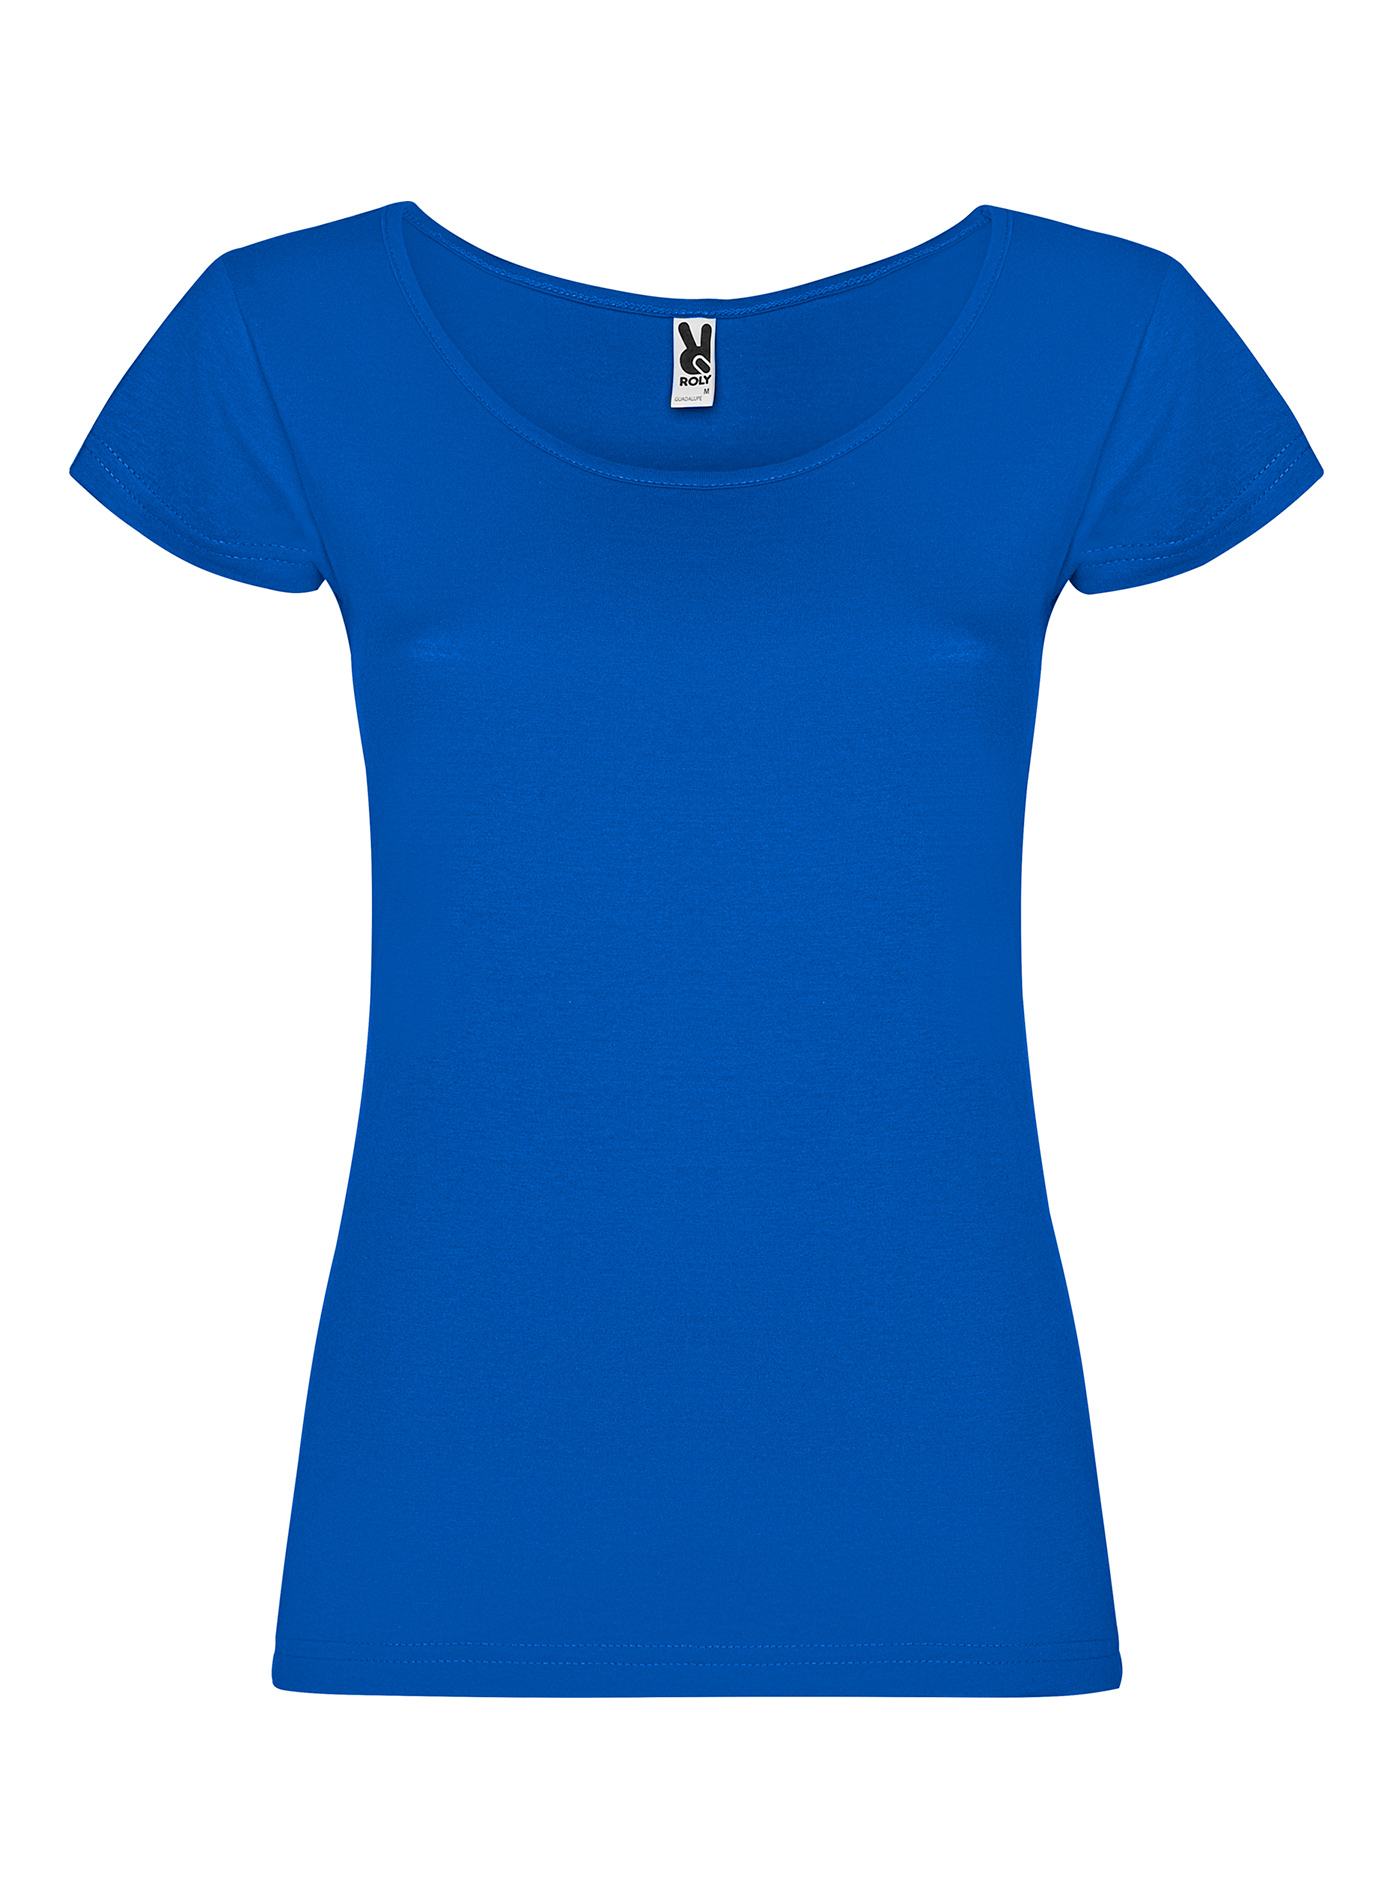 Dámské tričko Roly Guadalupe - Královská modrá S